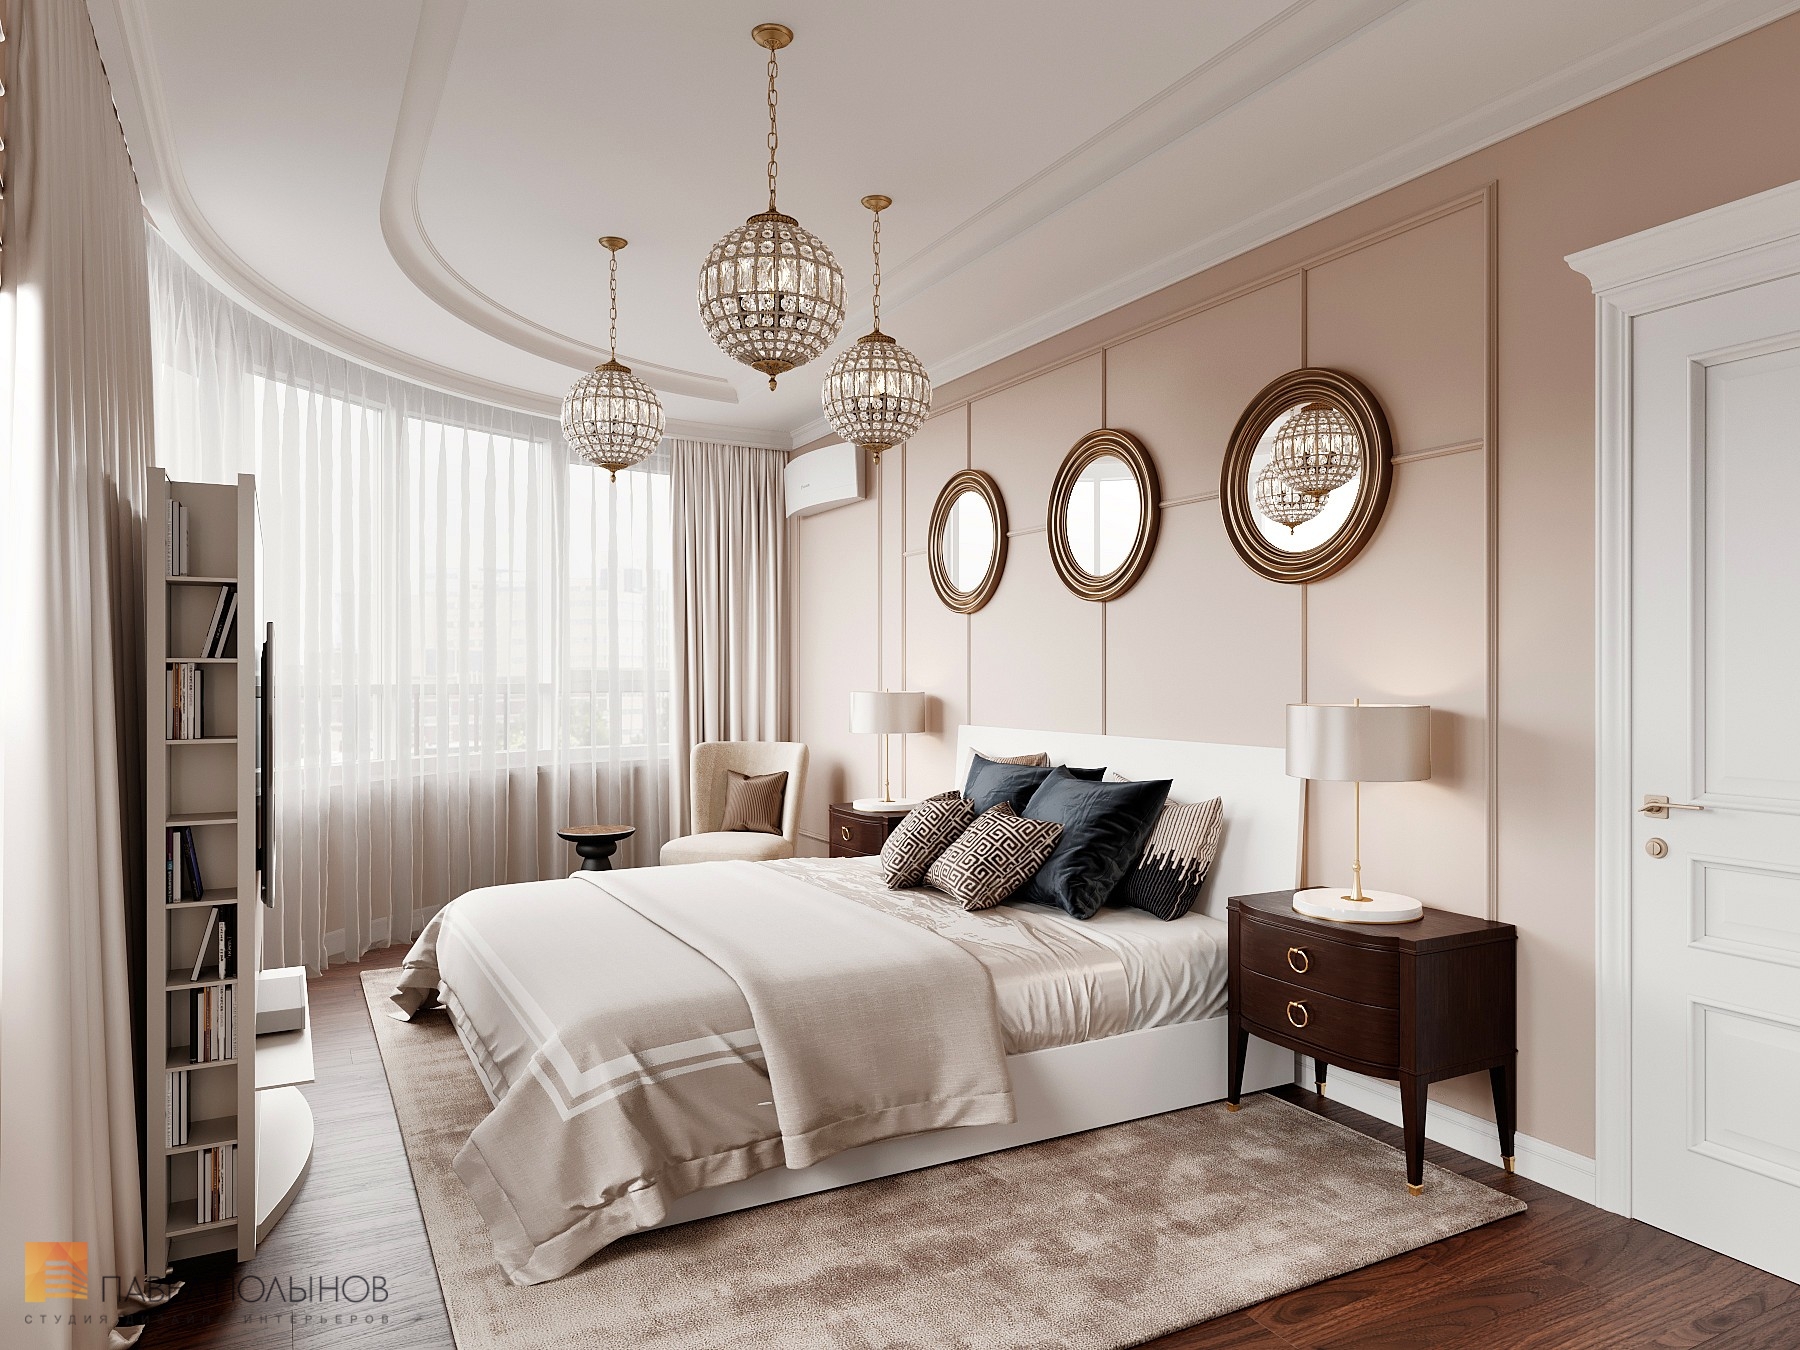 Фото дизайн спальни из проекта «Интерьер квартиры 200 кв.м. в стиле Ар-деко, ЖК «Граф Орлов»»